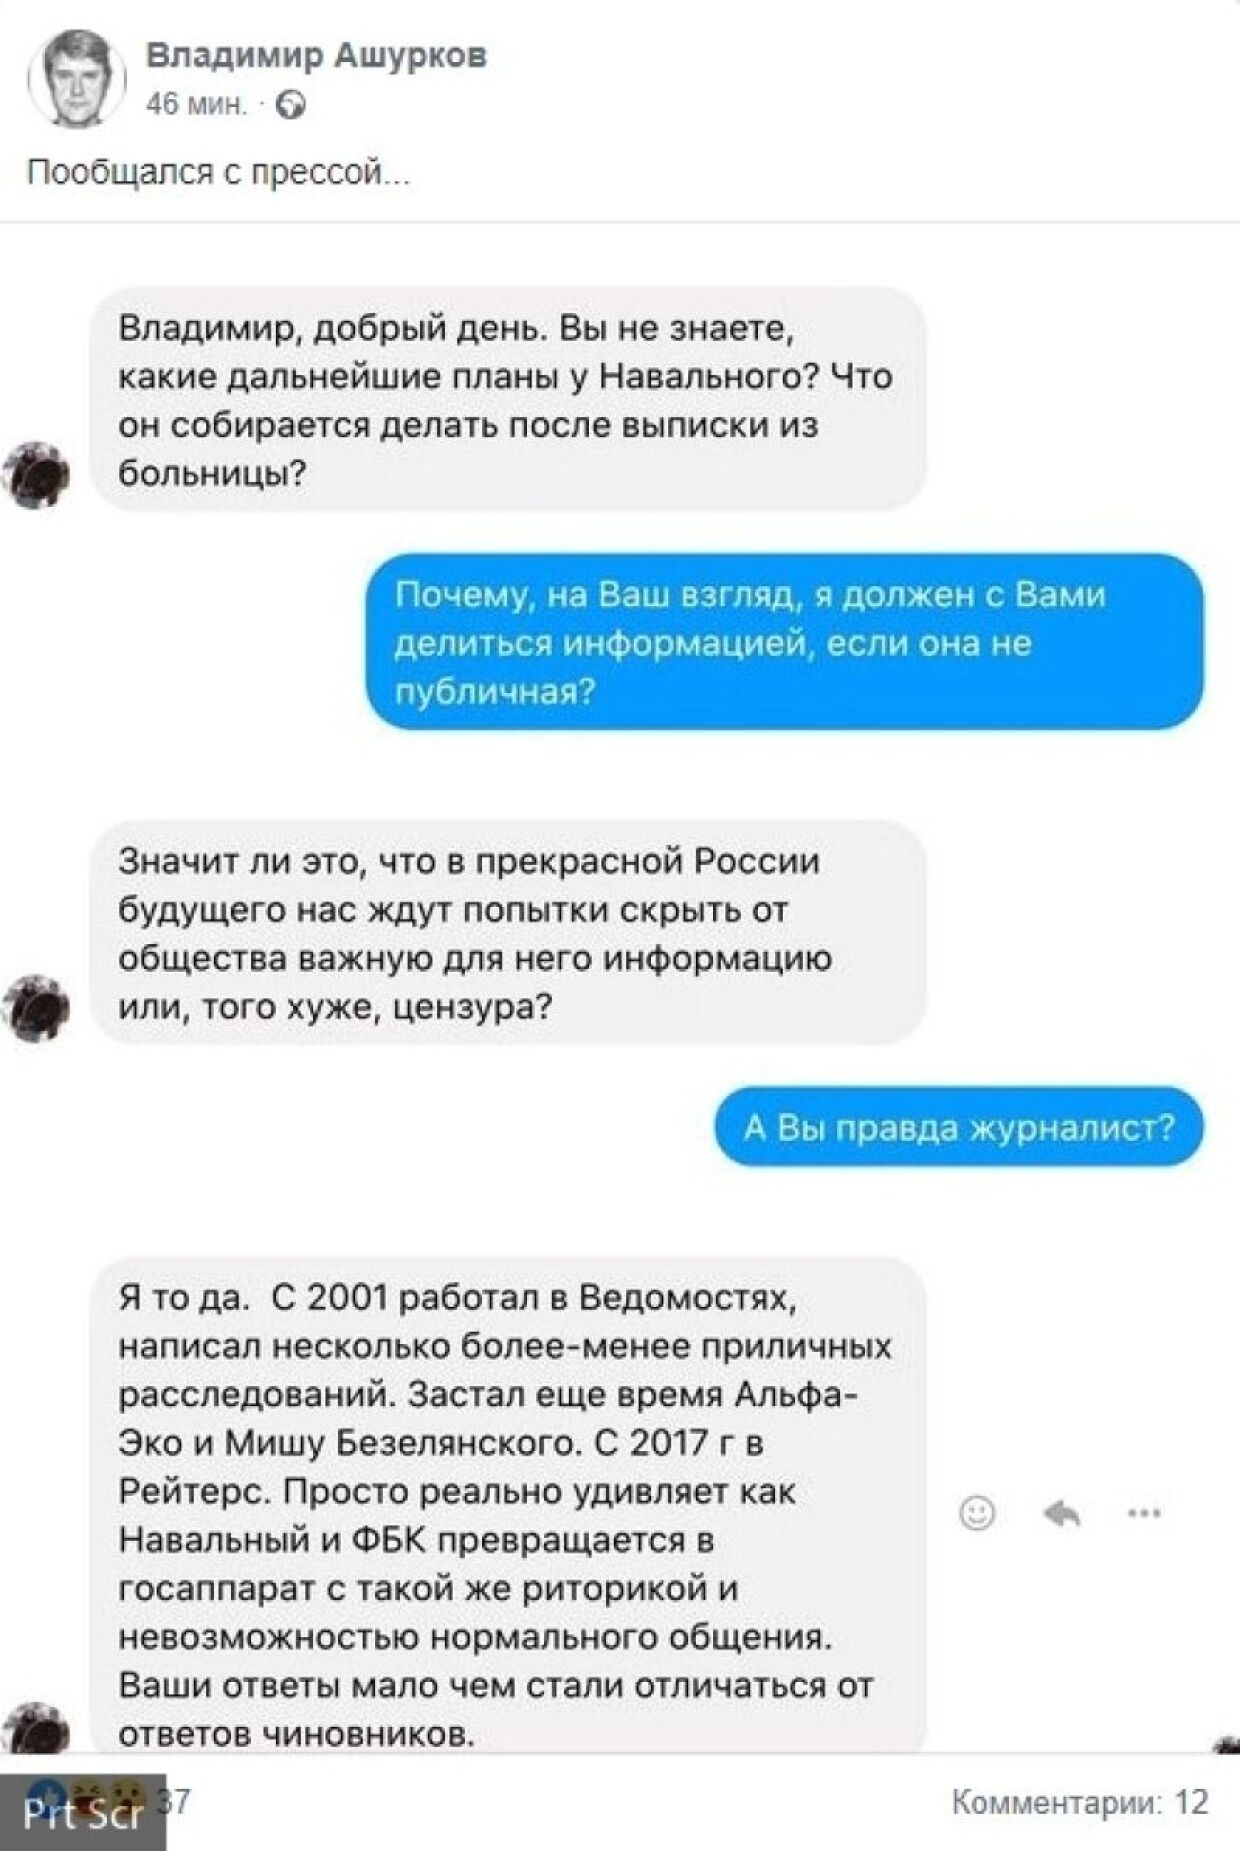 Ашурков нагрубил журналистам в ответ на попытки узнать о планах Навального